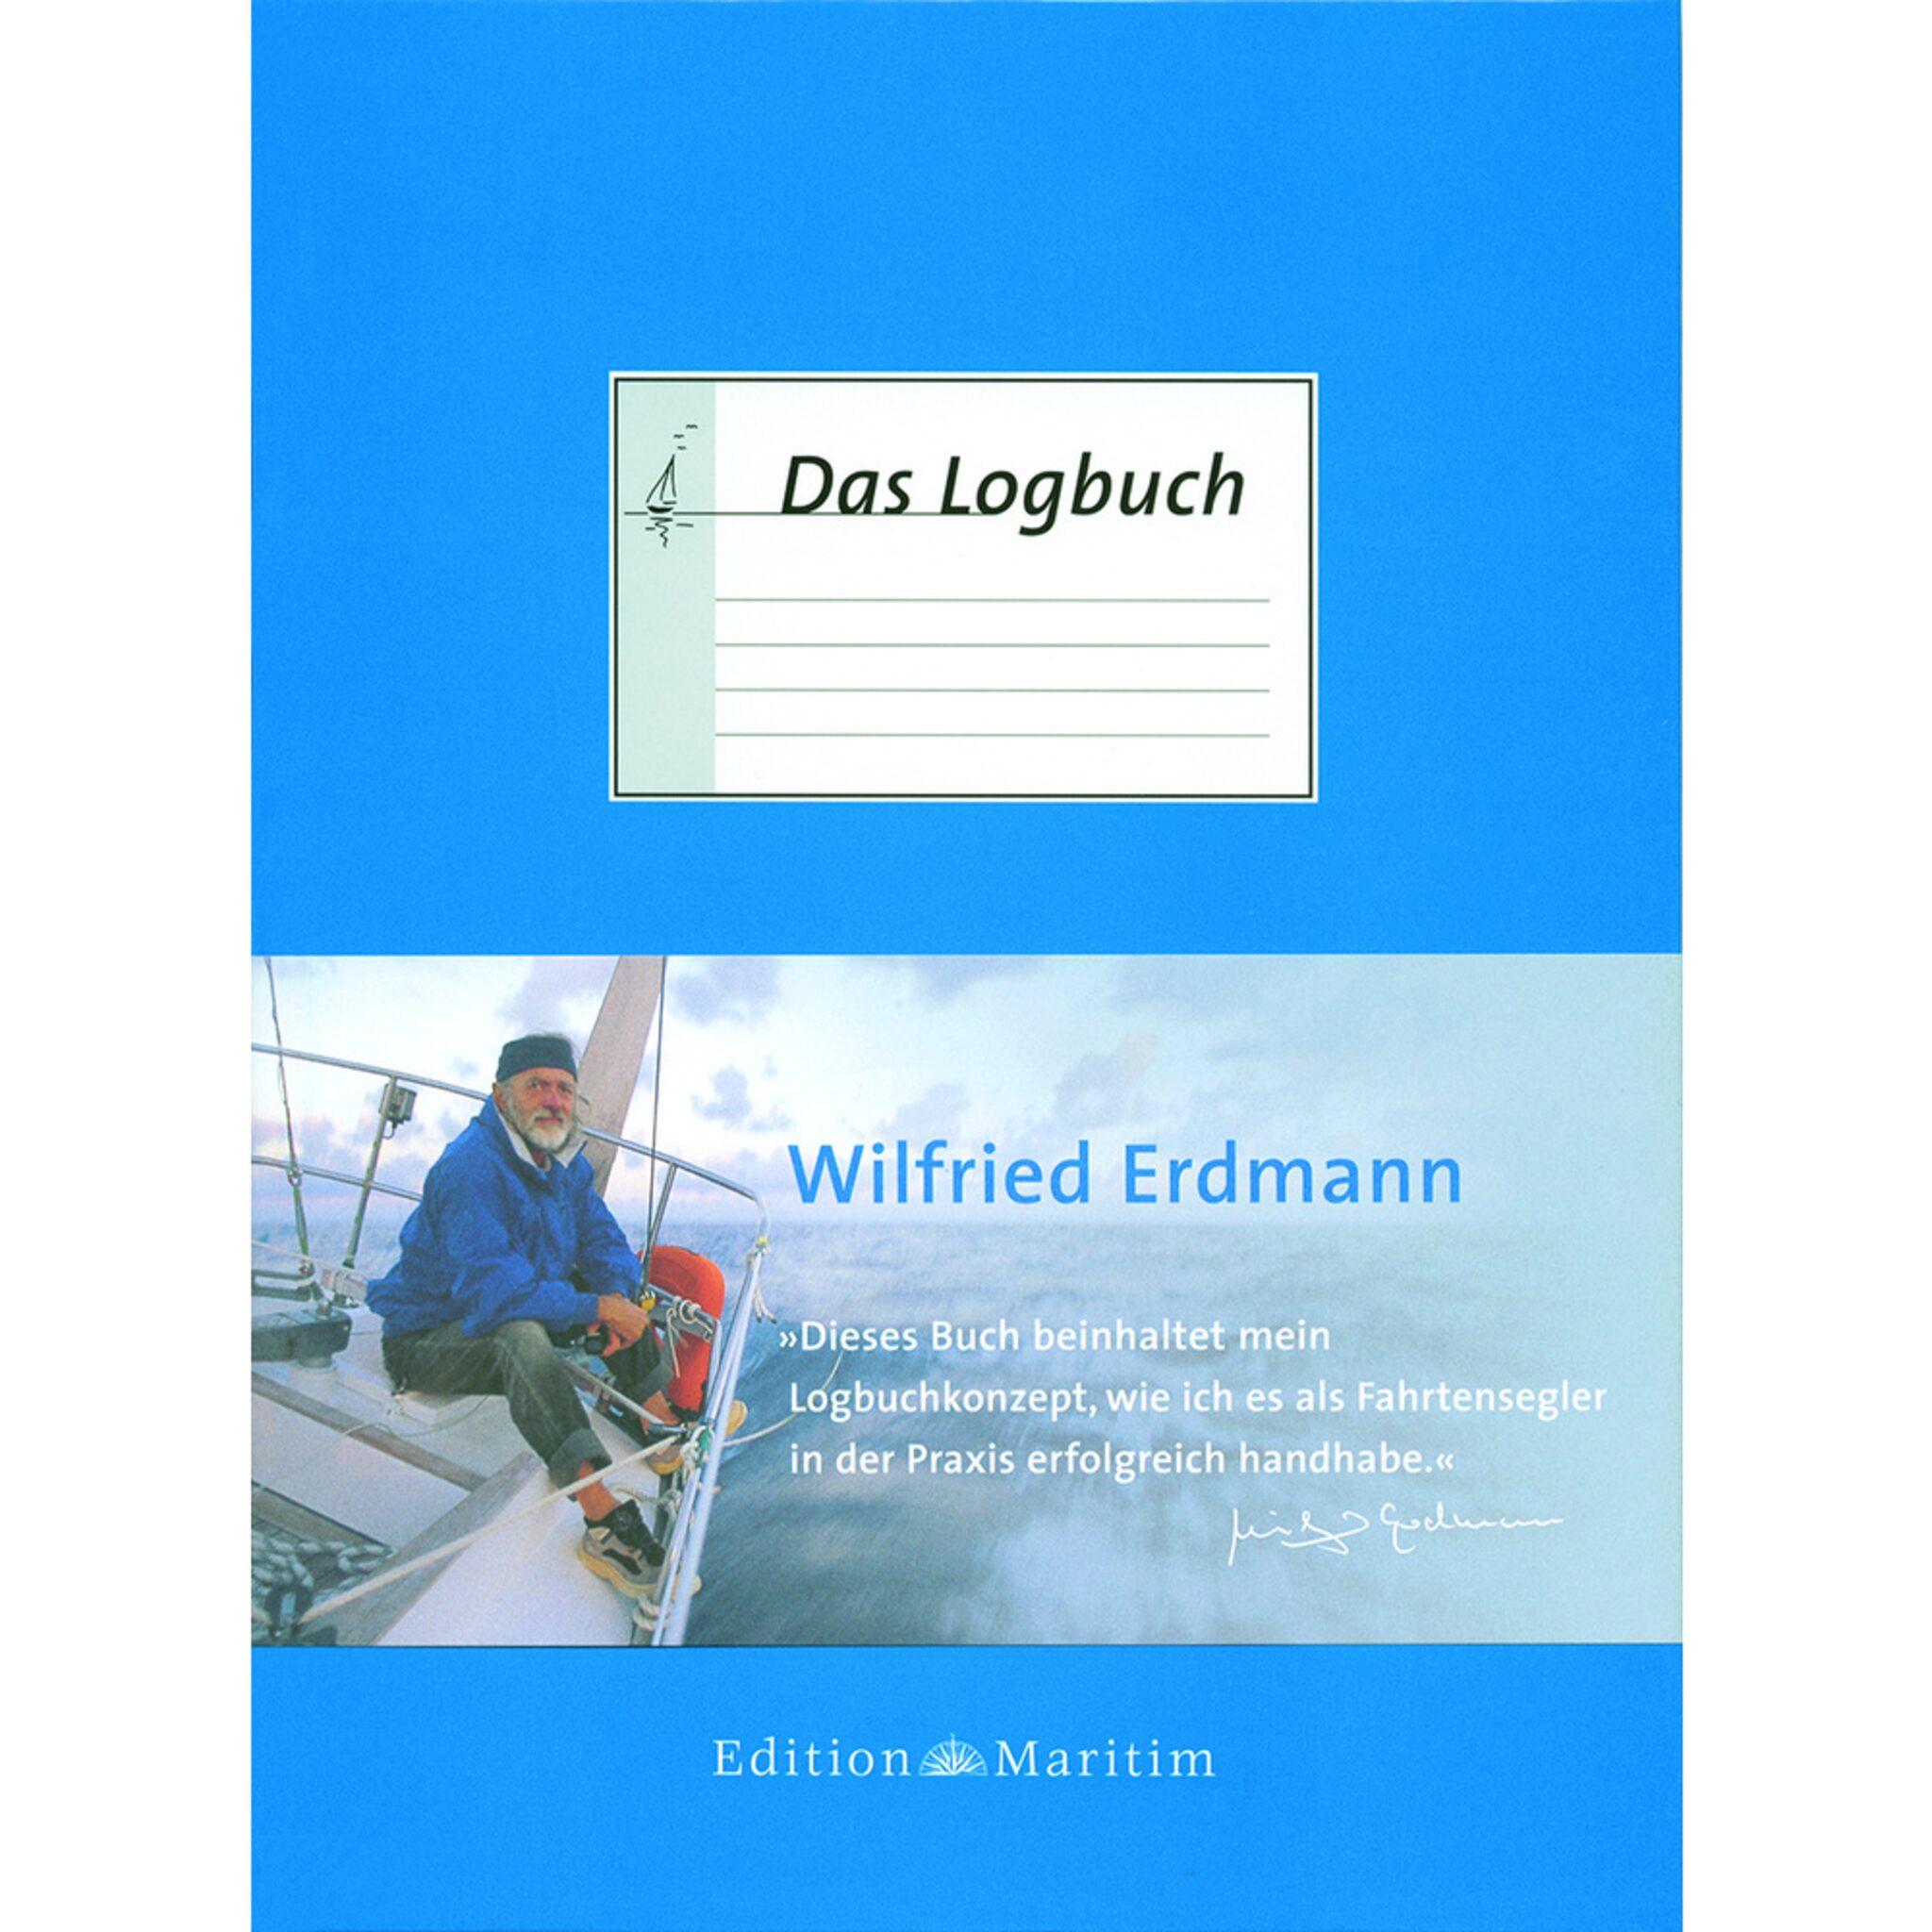 Edition Maritim DAS LOGBUCH von Wilfried Erdmann